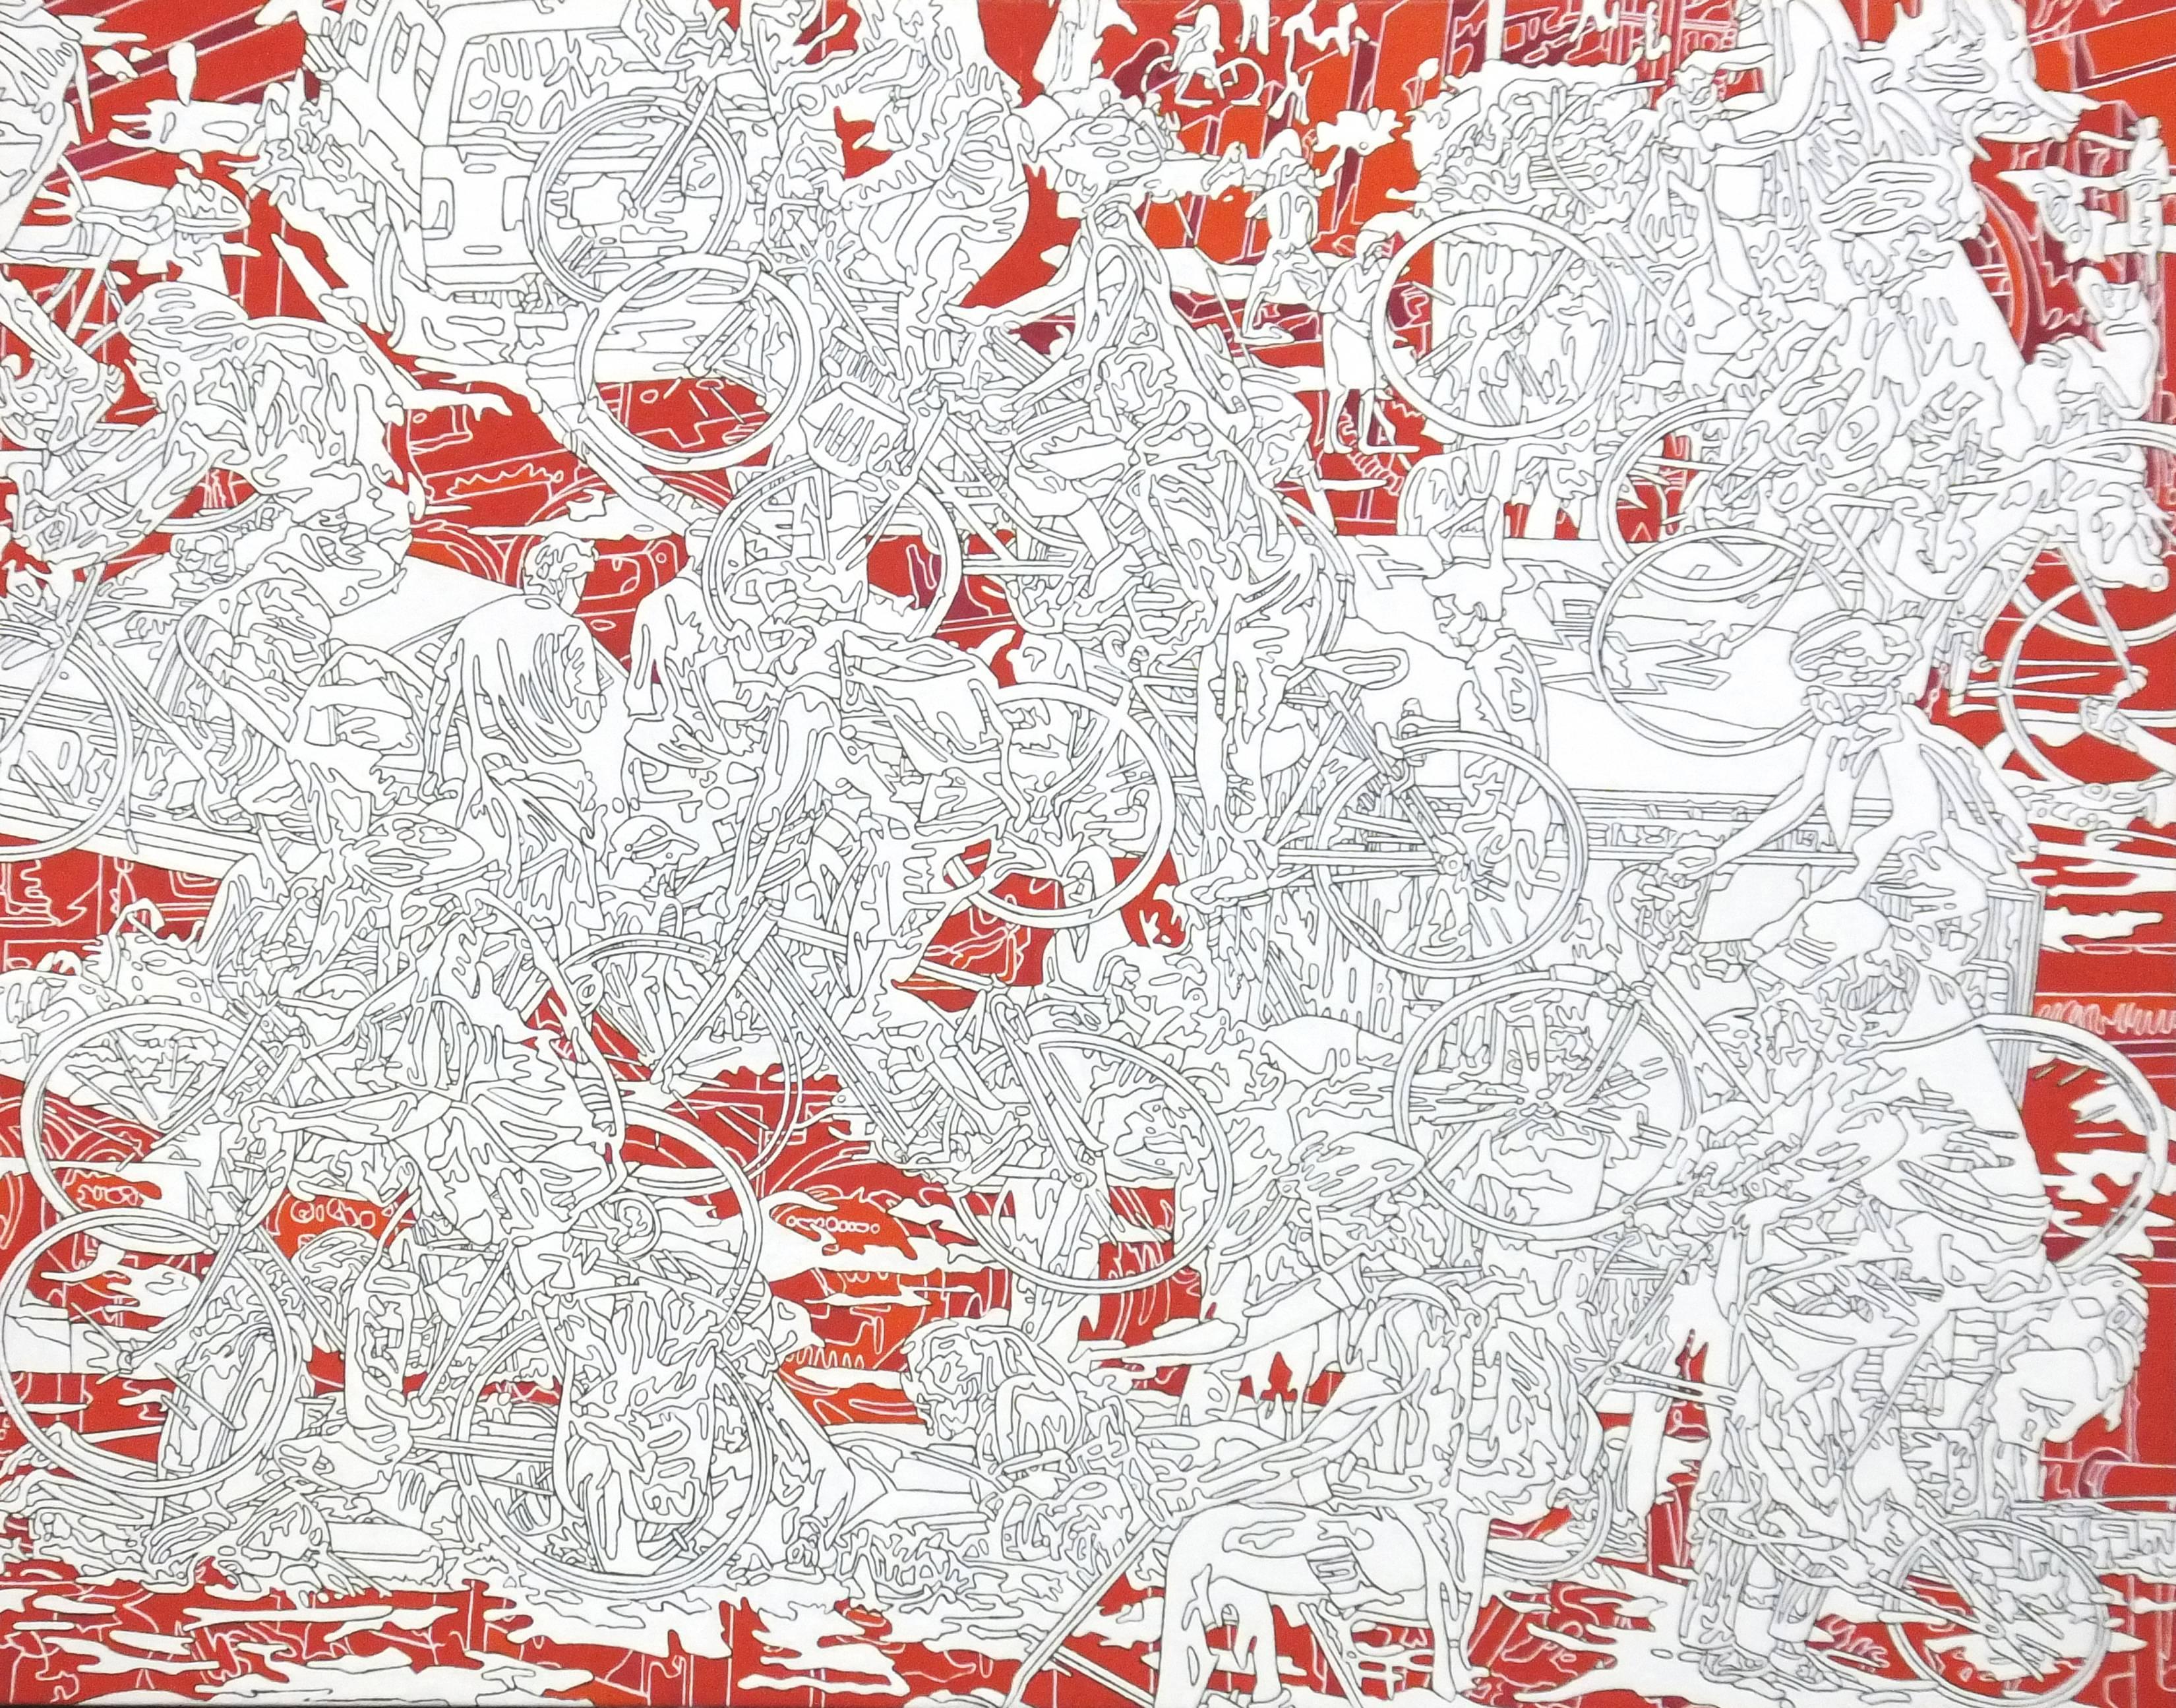 Park-r-1, dessin au trait rouge et blanc, scène urbaine animée, personnes abstraites